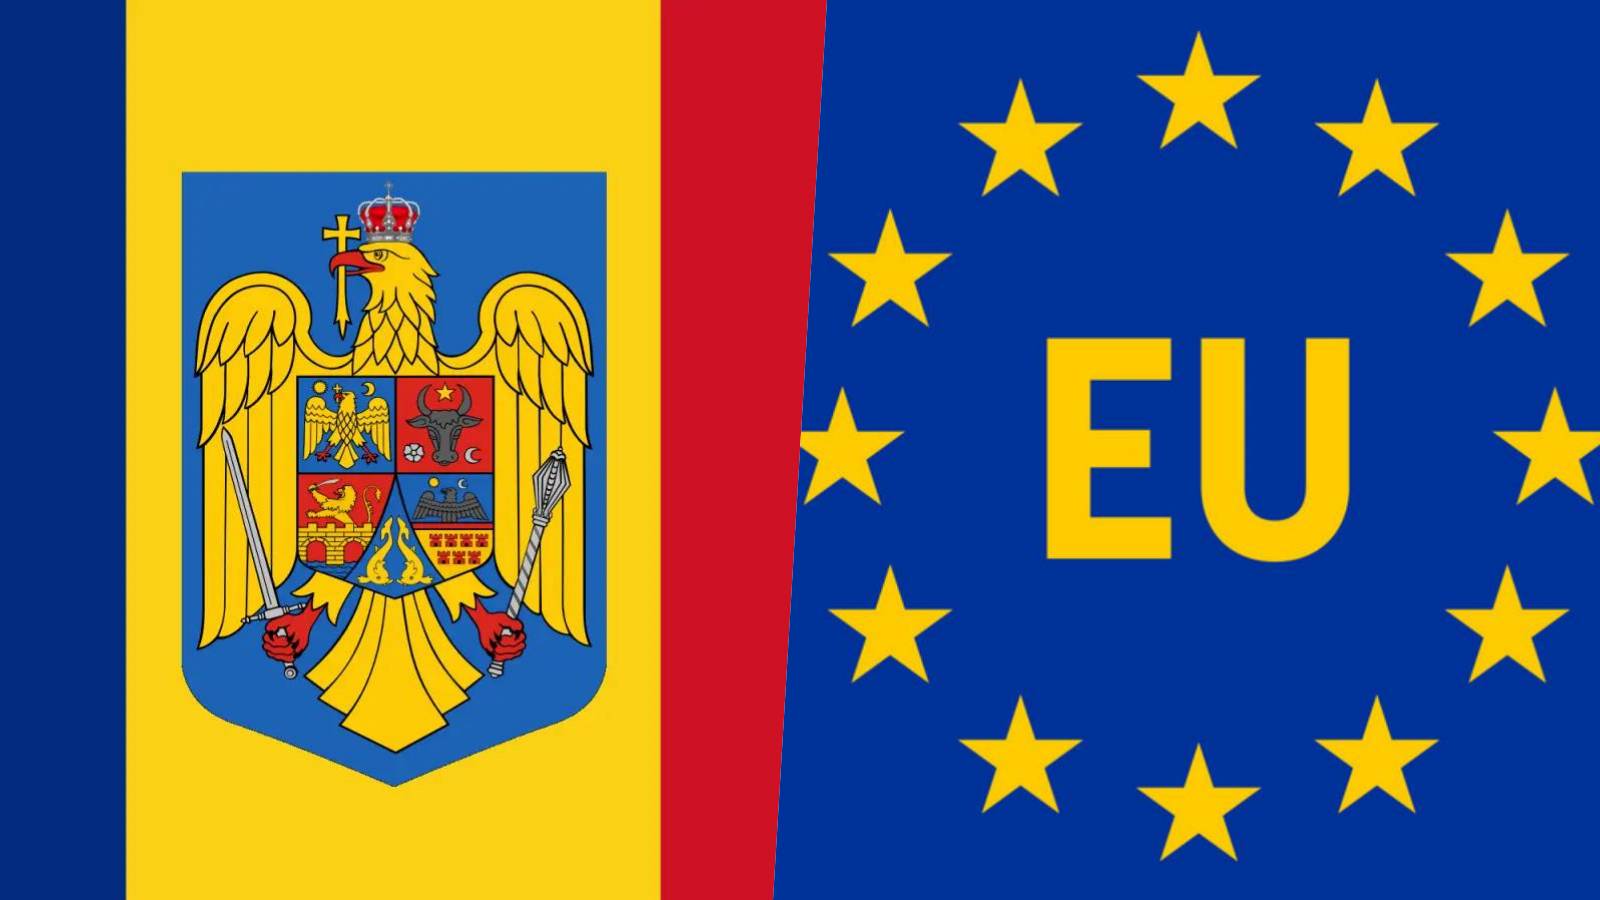 Actiunile Oficiale Romaniei Masurile MAI ULTIM MOMENT Permitand Finalizarea Aderarii Schengen